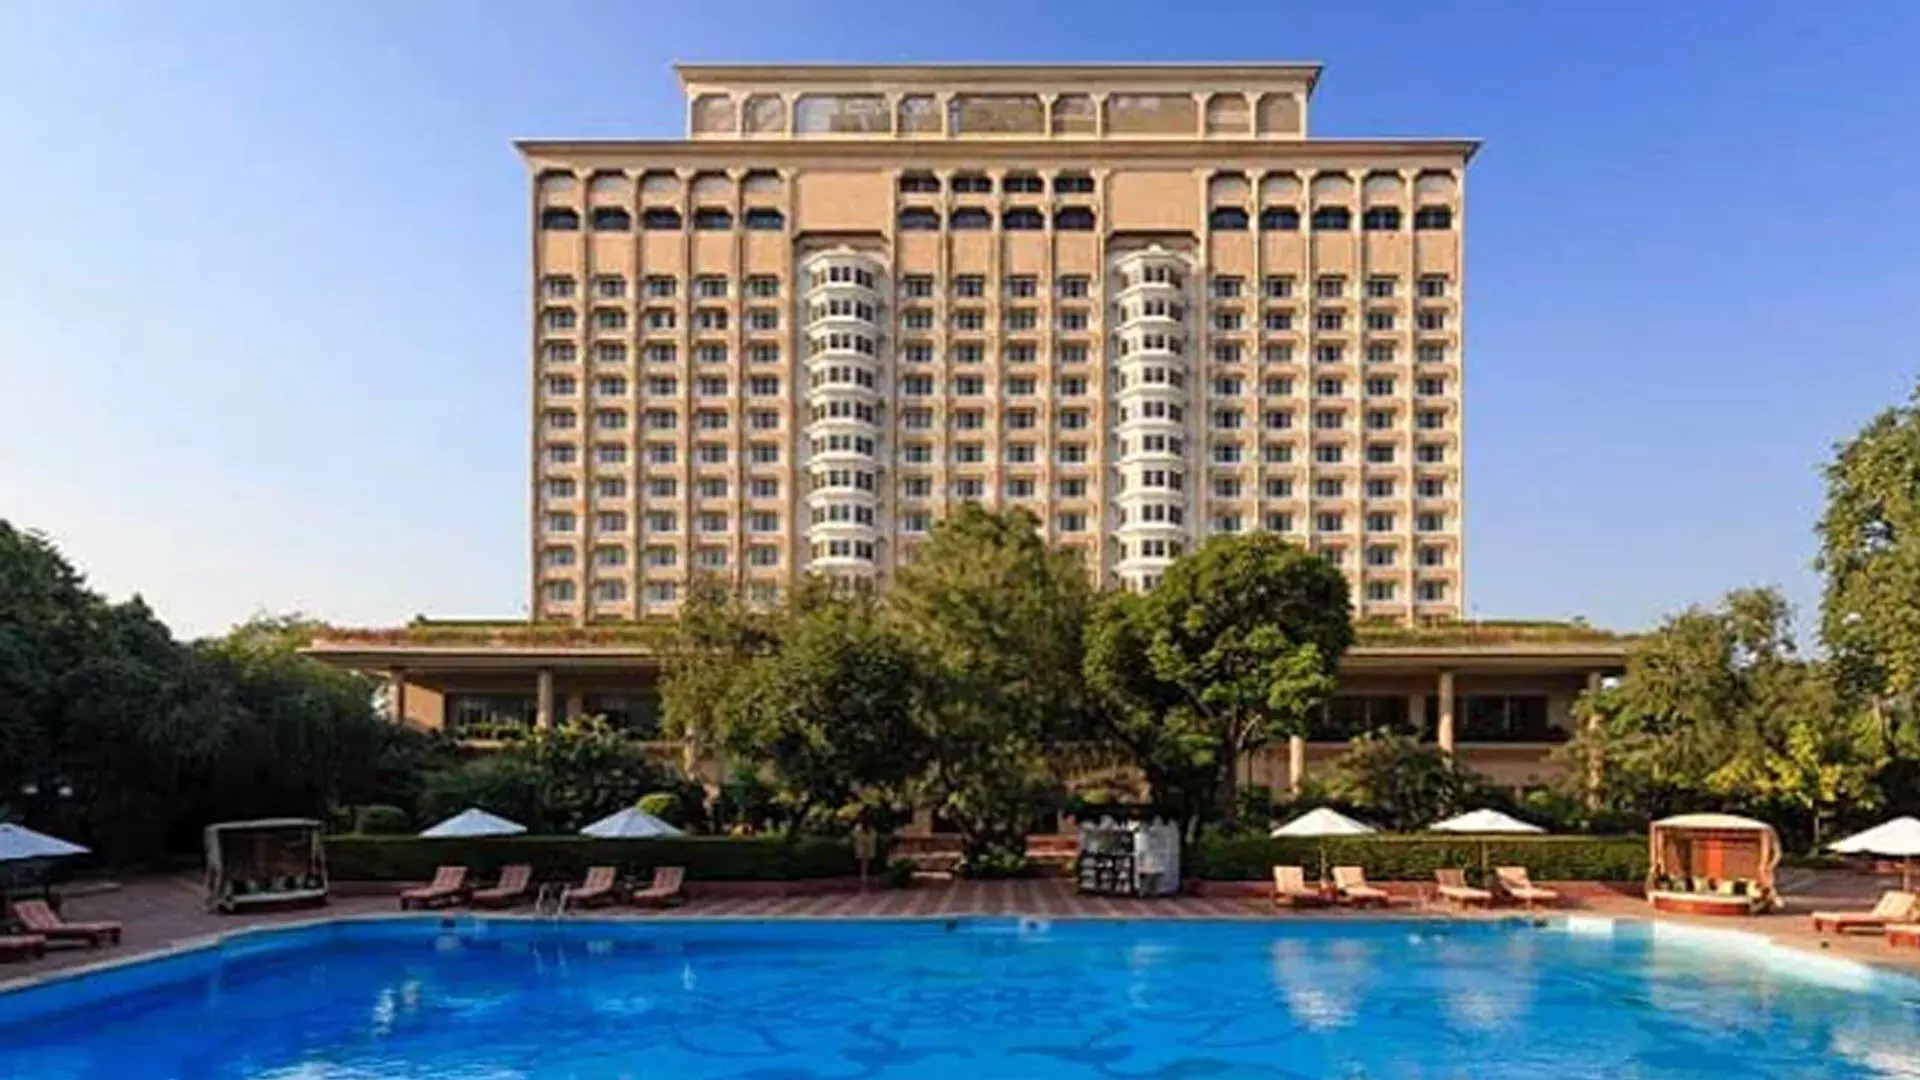 ताज ब्रांड की मूल कंपनी इंडियन होटल्स कंपनी 90 नई संपत्तियां खोलेगी